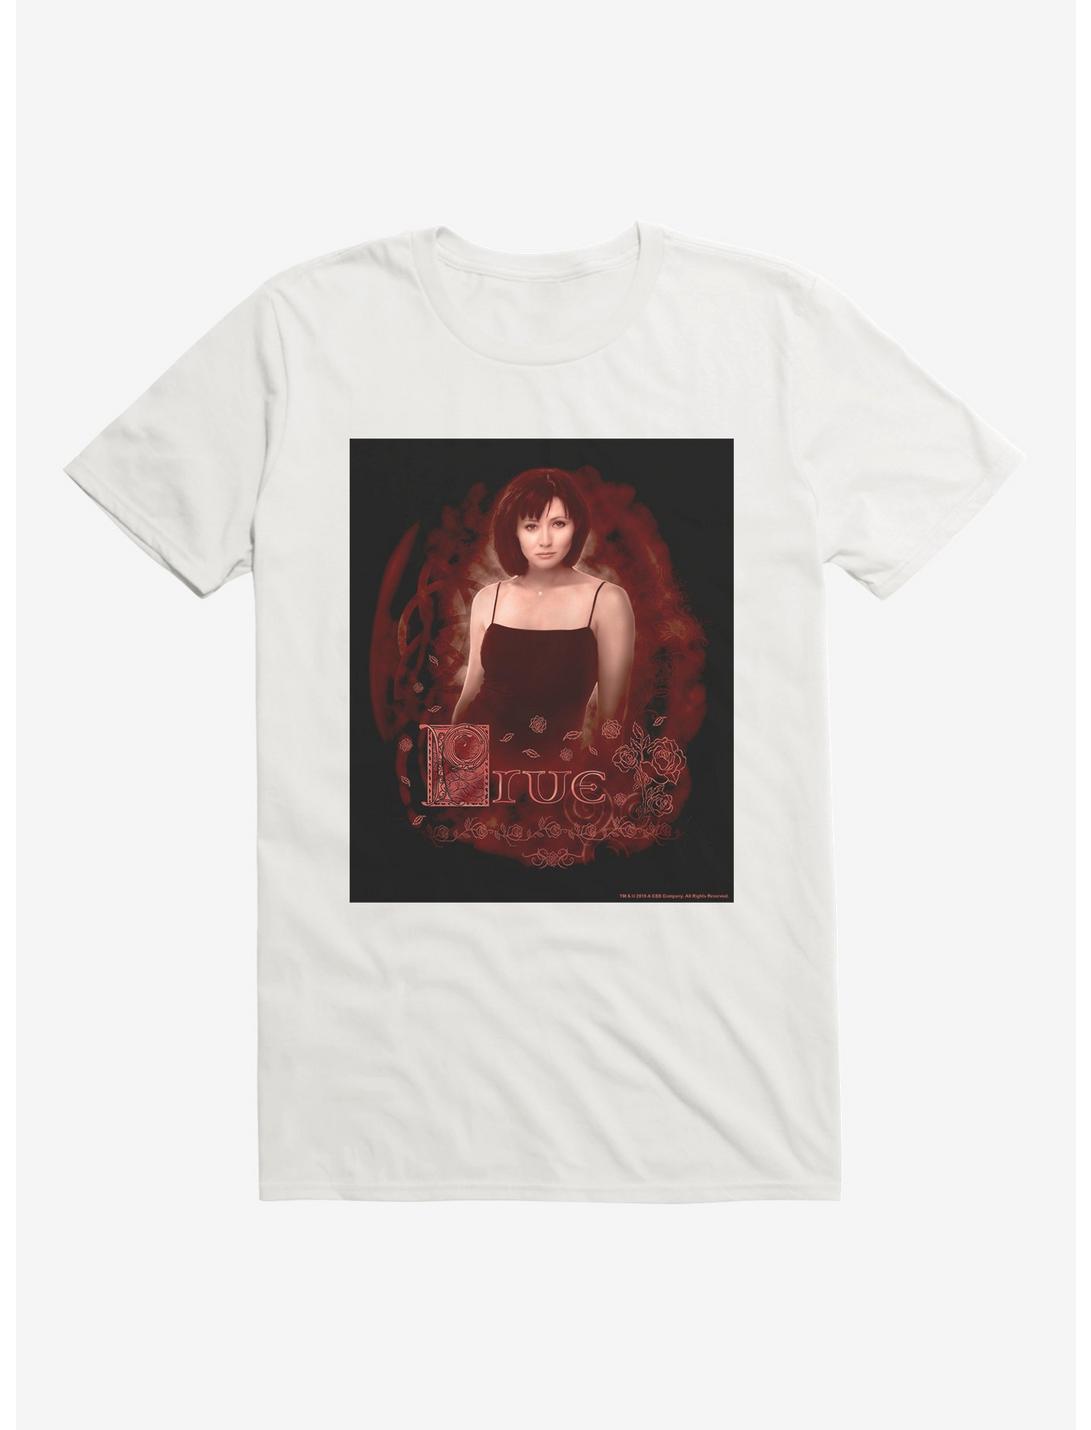 Charmed Prue T-Shirt, , hi-res